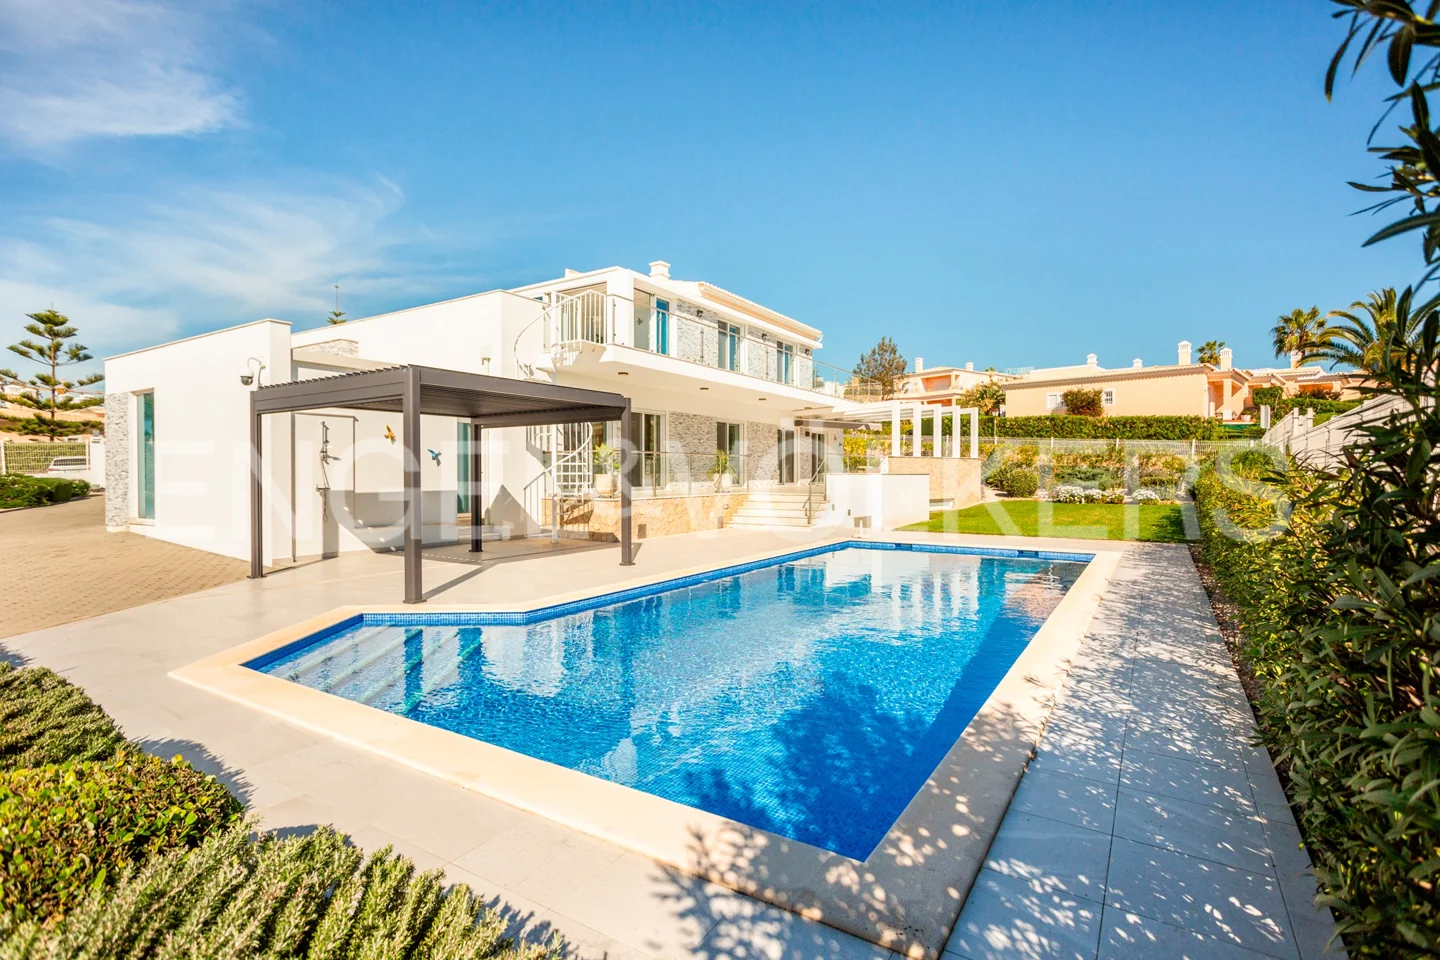 Luxury 4-bedroom villa in Carvoeiro with sea views